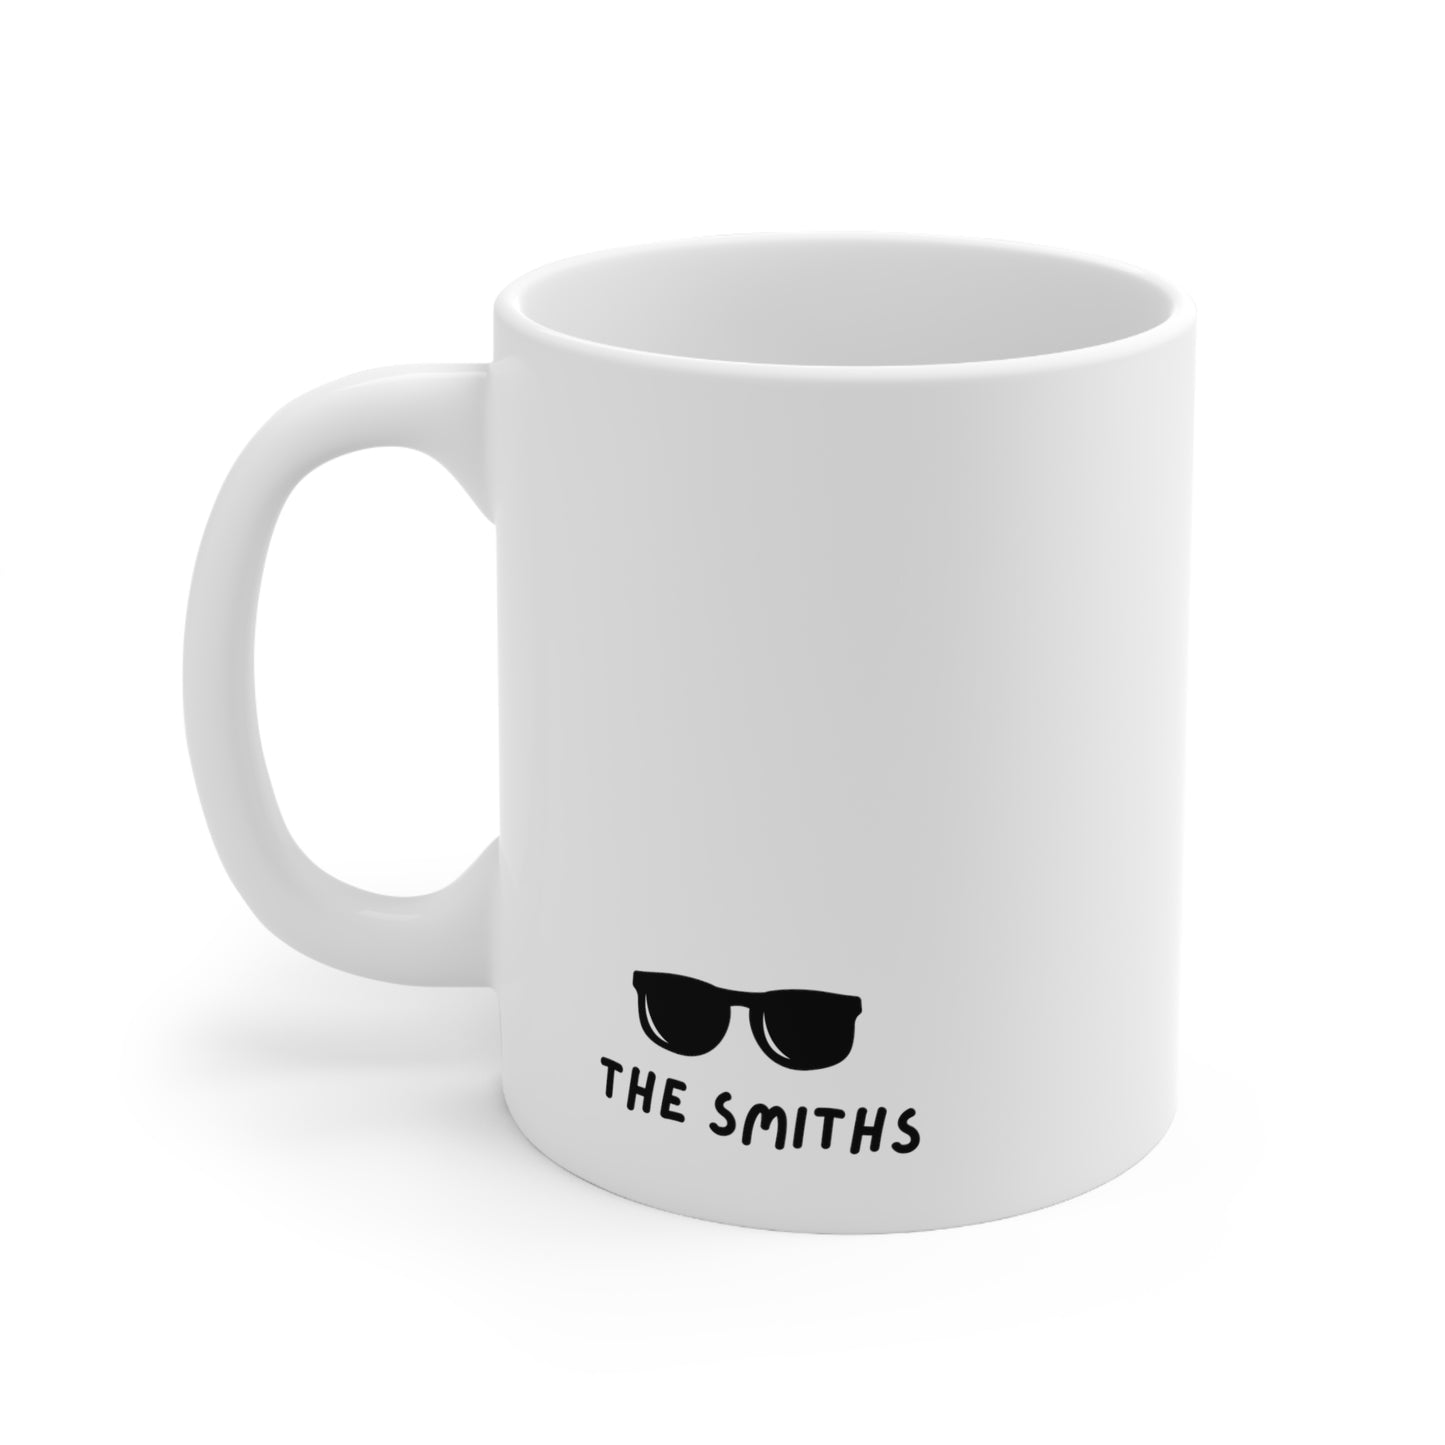 The Smiths - 'I'm Miserable Now' Mug